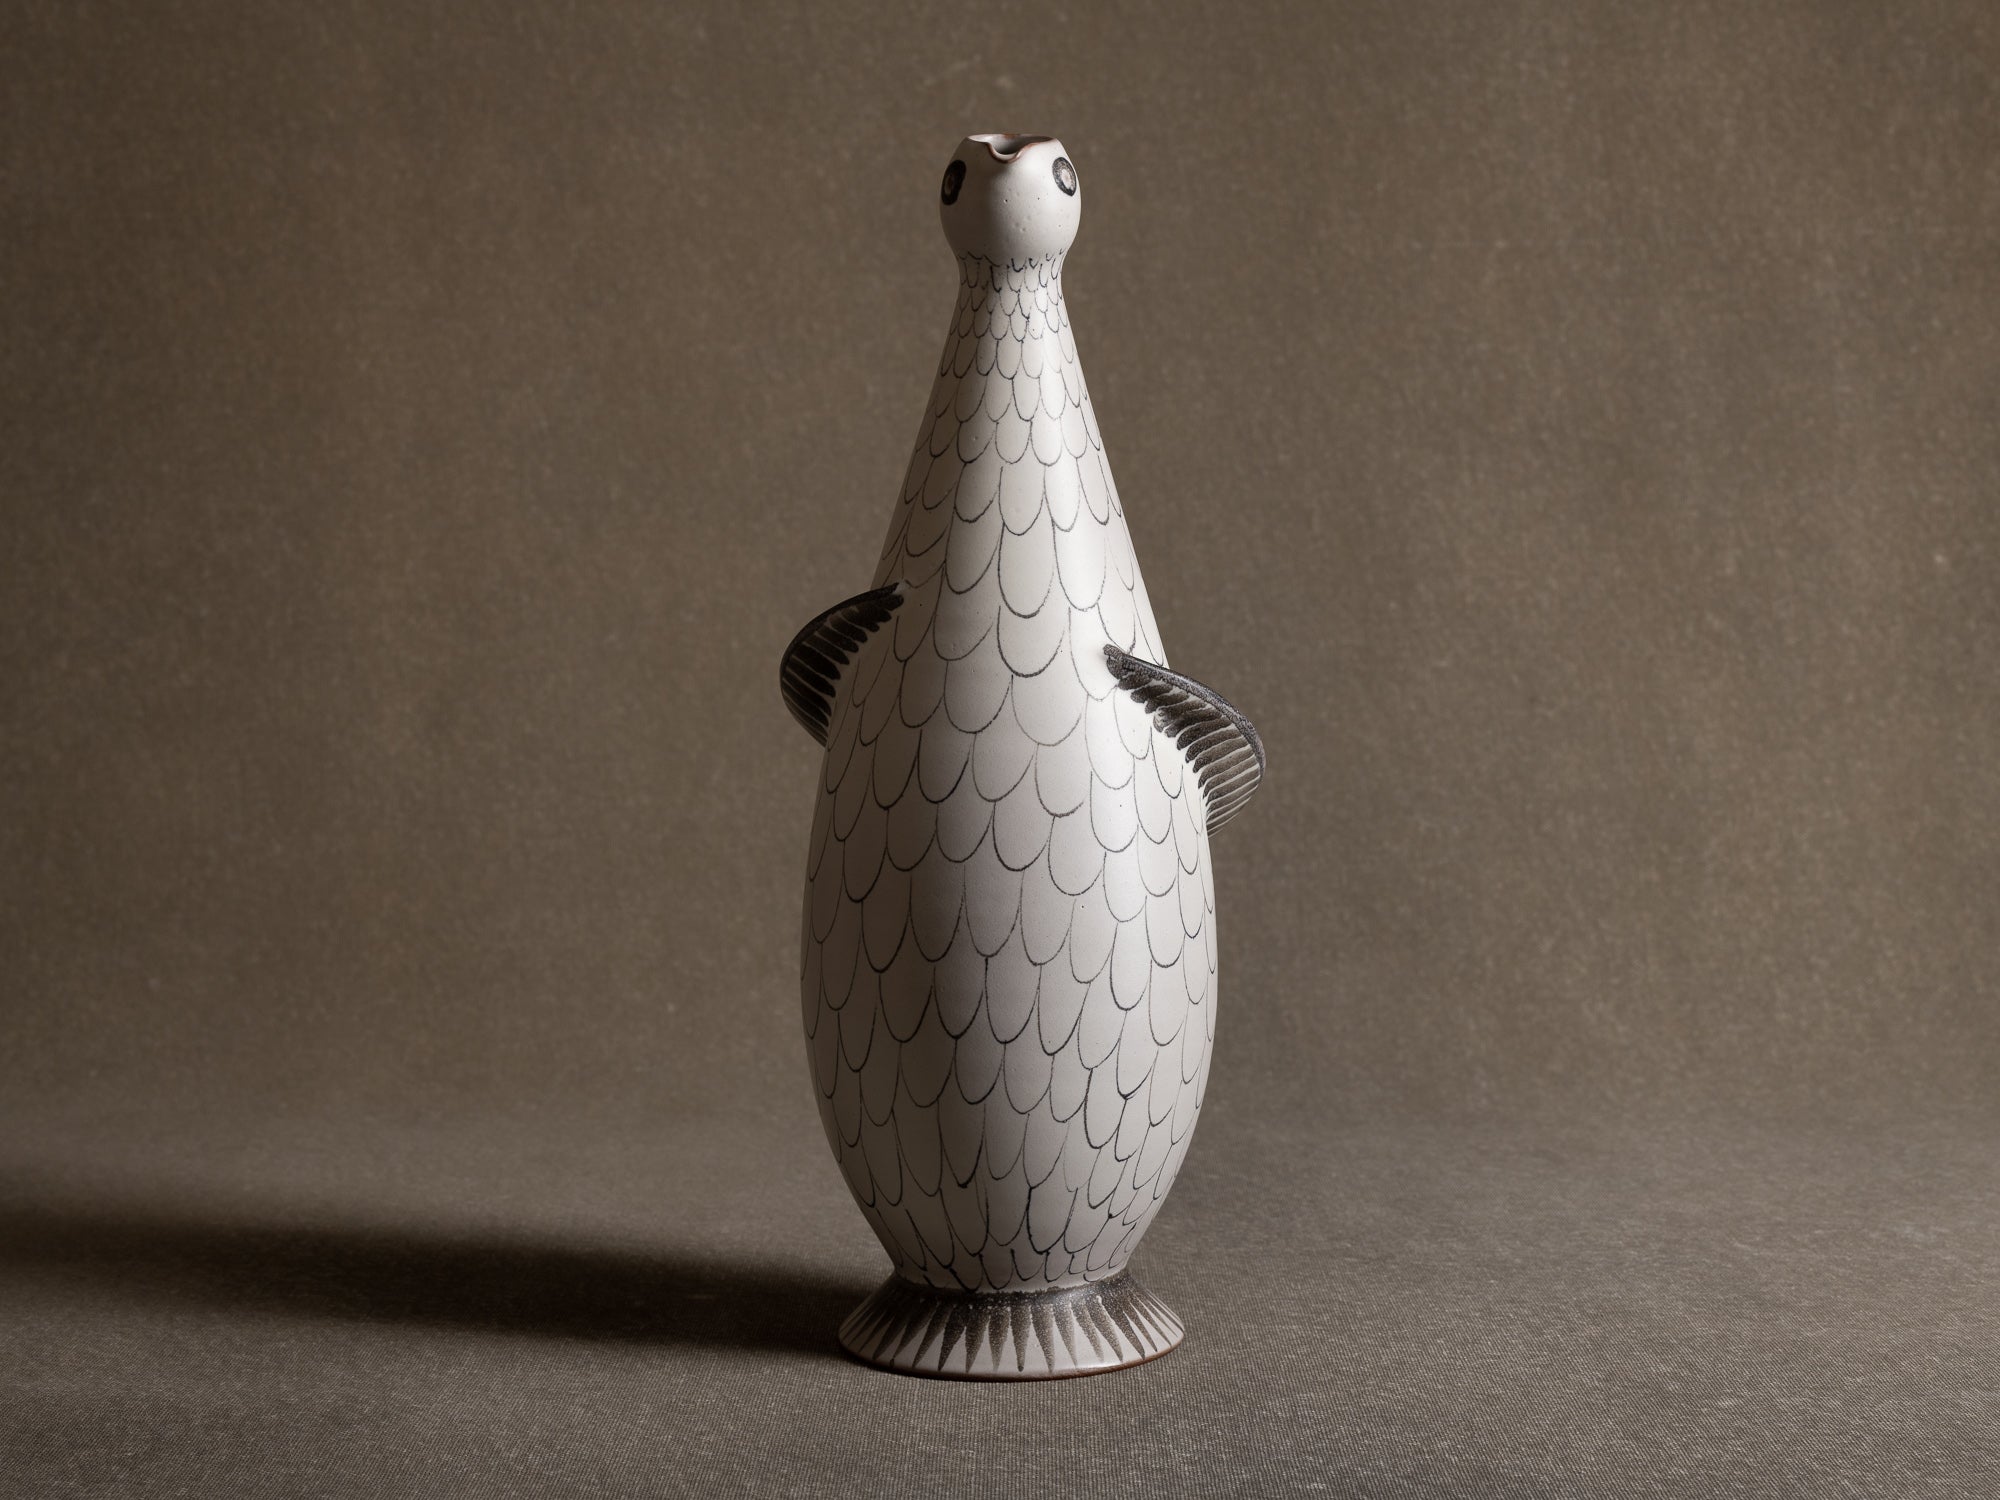 Vase-Sculpture oiseau en faïence par Maria Kohler pour Villeroy & Boch, Allemagne (années 1950)..Vase-Sculpture bird in earthenware by Maria Kohler for Villeroy & Boch, Germany (1950s)